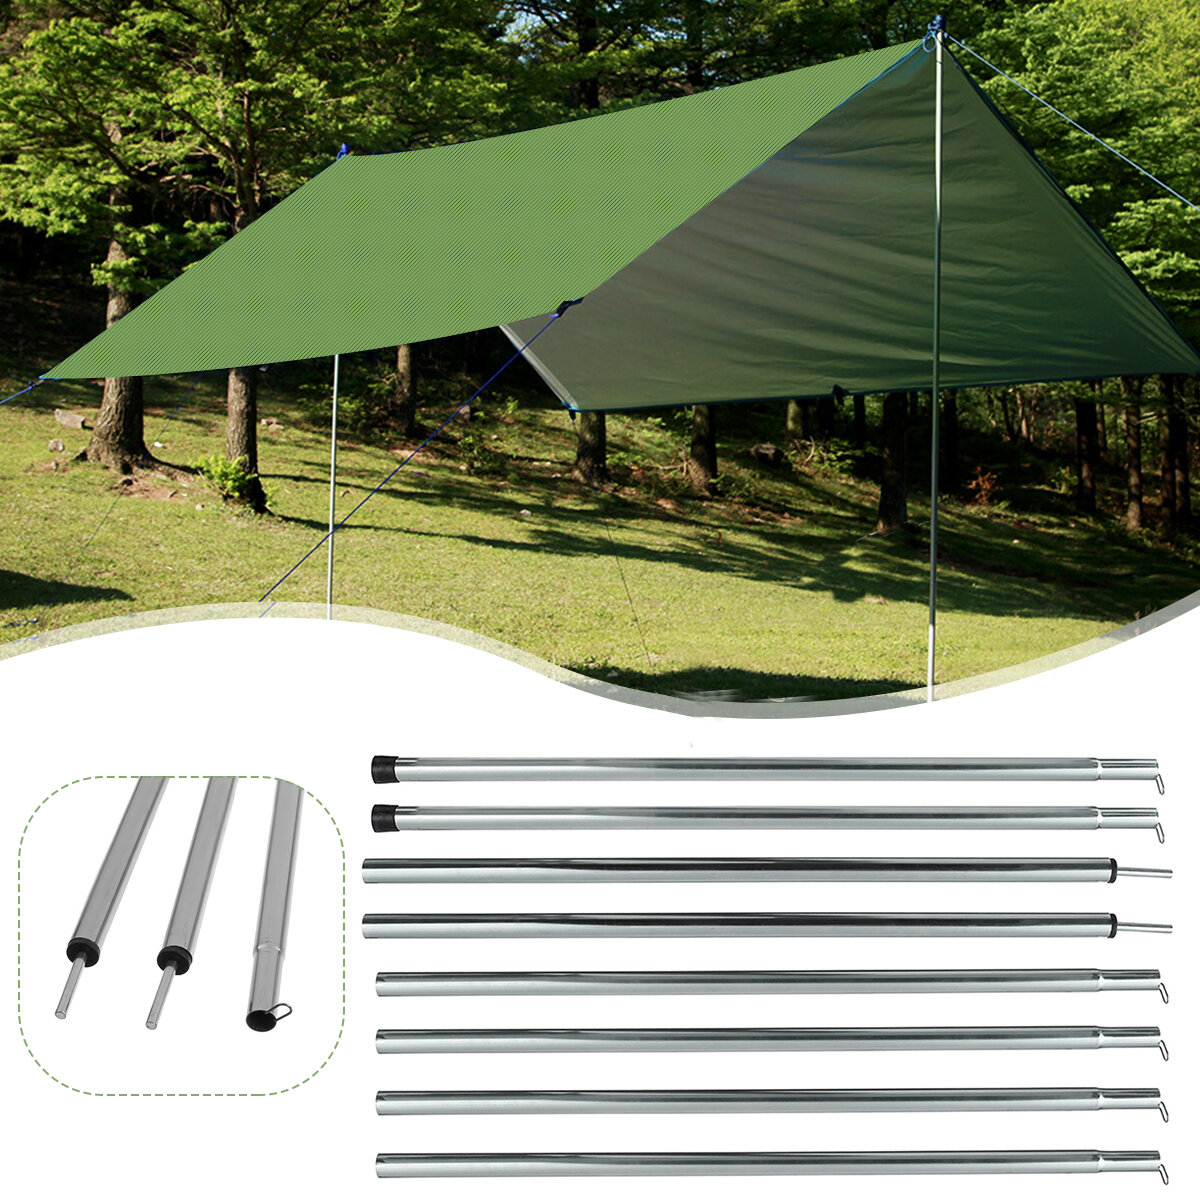 00 cm-es üvegszál támasztó rudak kemping sátraihoz, napellenző keretekhez, sátor kiegészítőkhöz